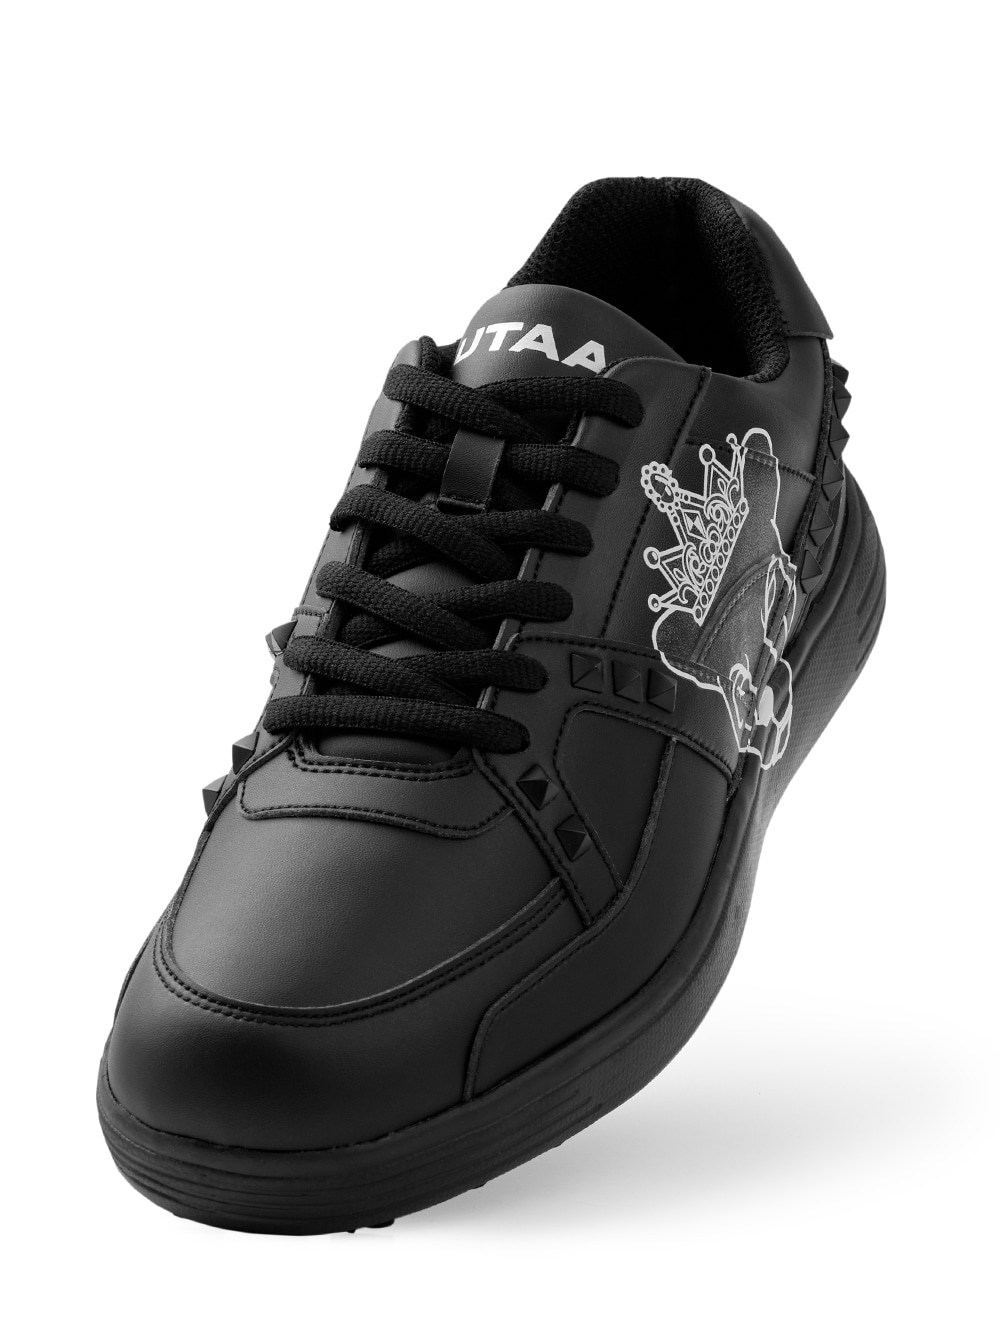 UTAA Crown Panther Golf Sneakers : Men&#039;s Black (UB0GHM102BK)